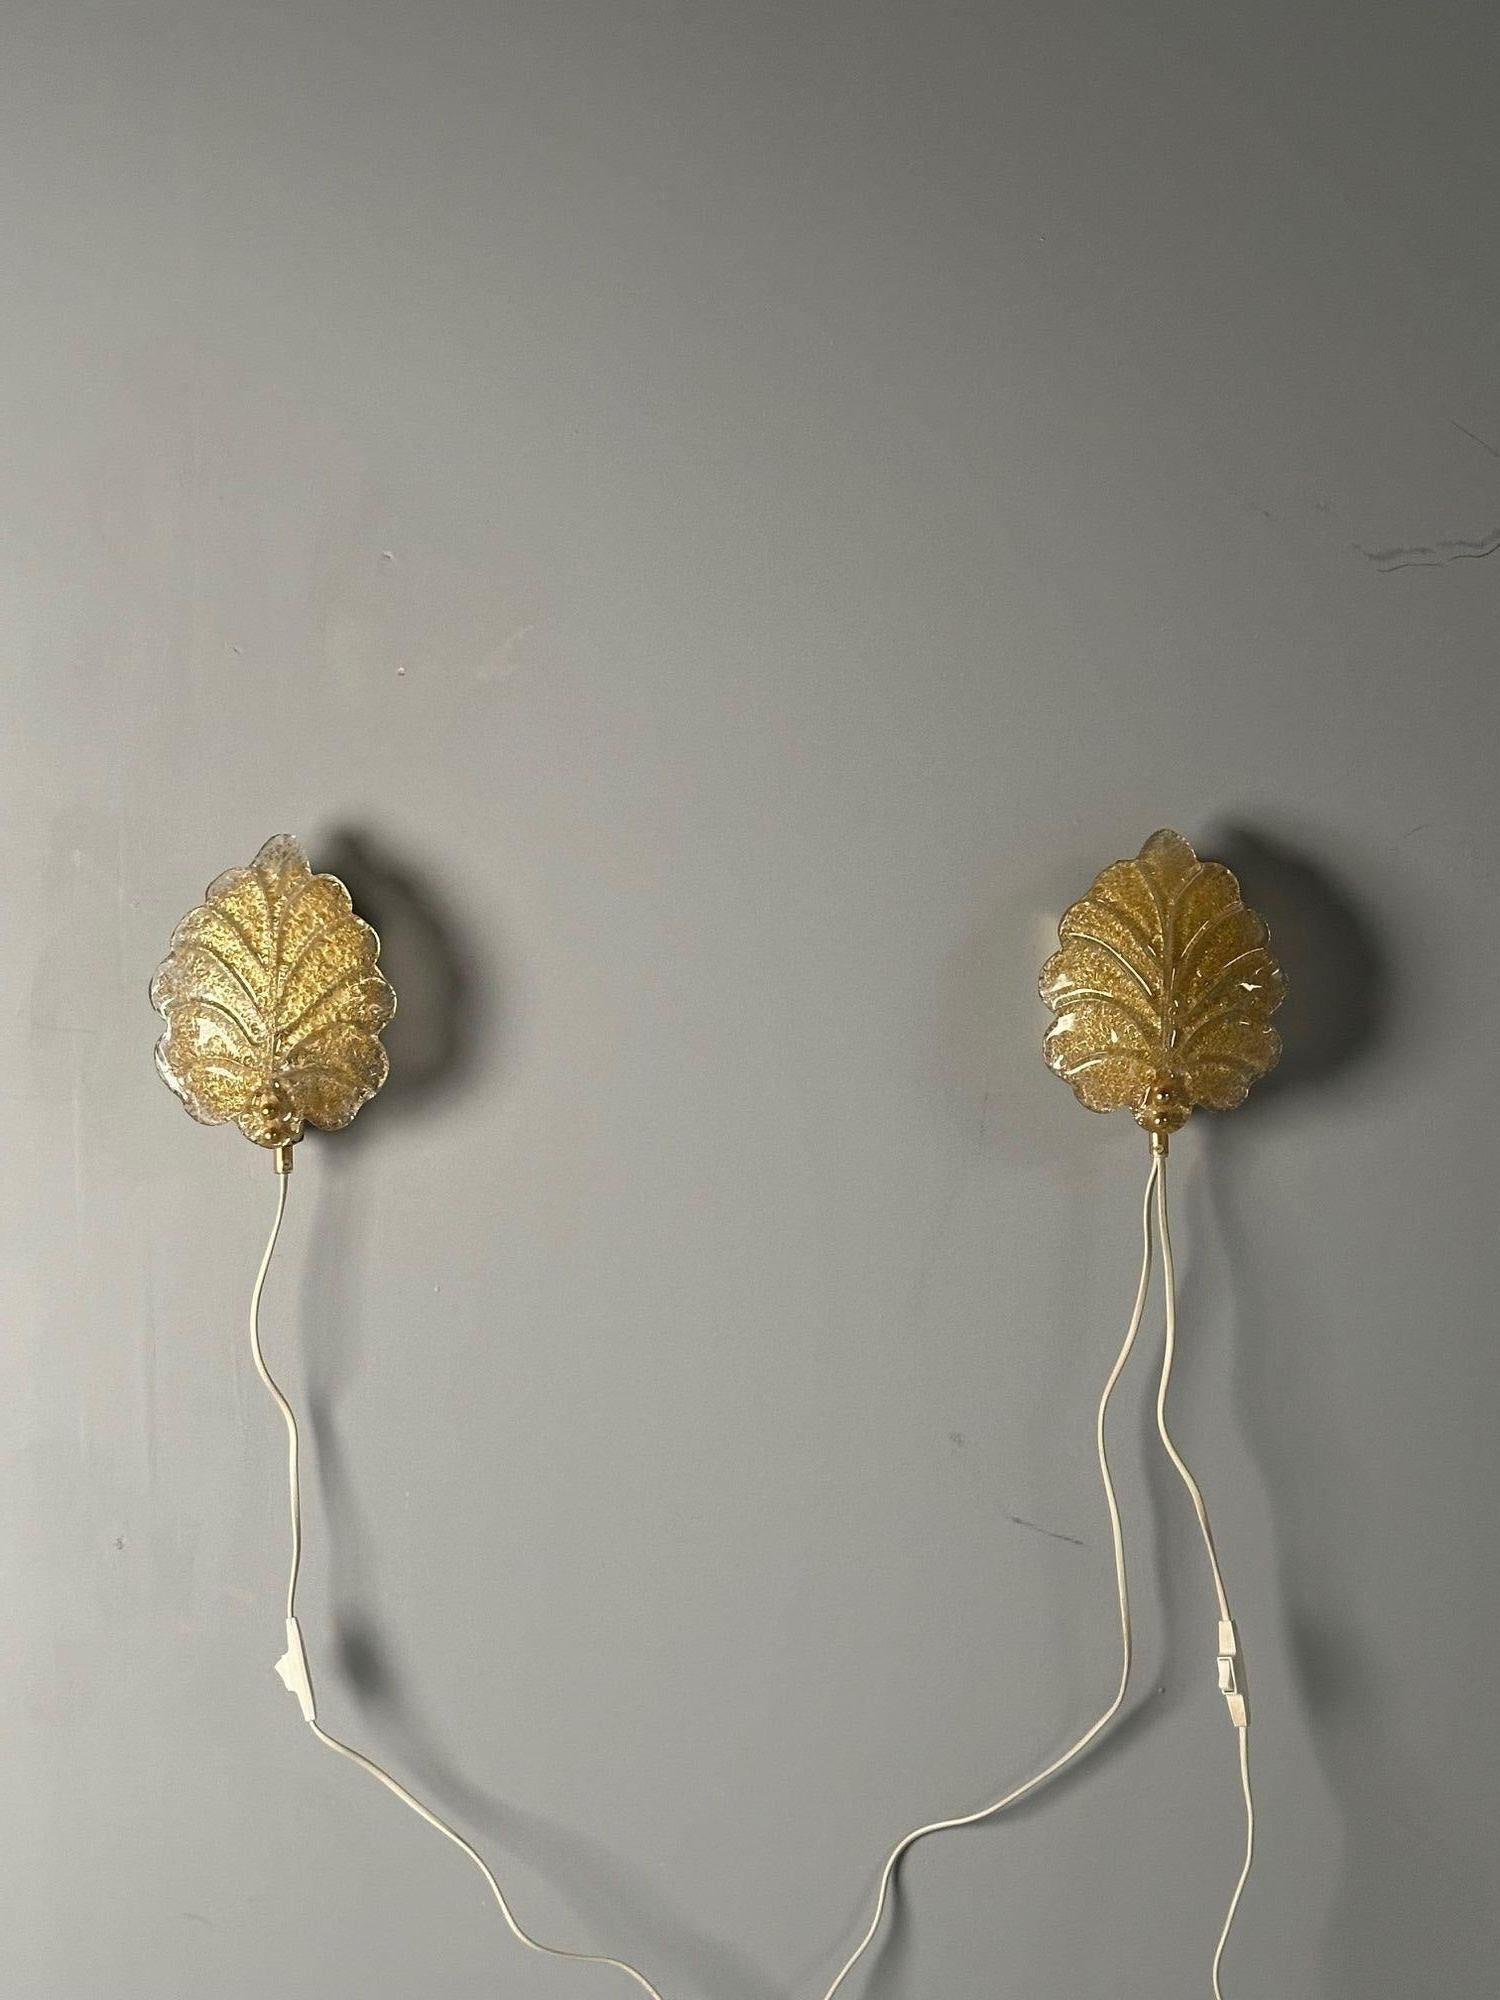 Reijmyre, Swedish Mid-Century Modern, Gold Leaf Sconces, Sweden, 1990s For Sale 4